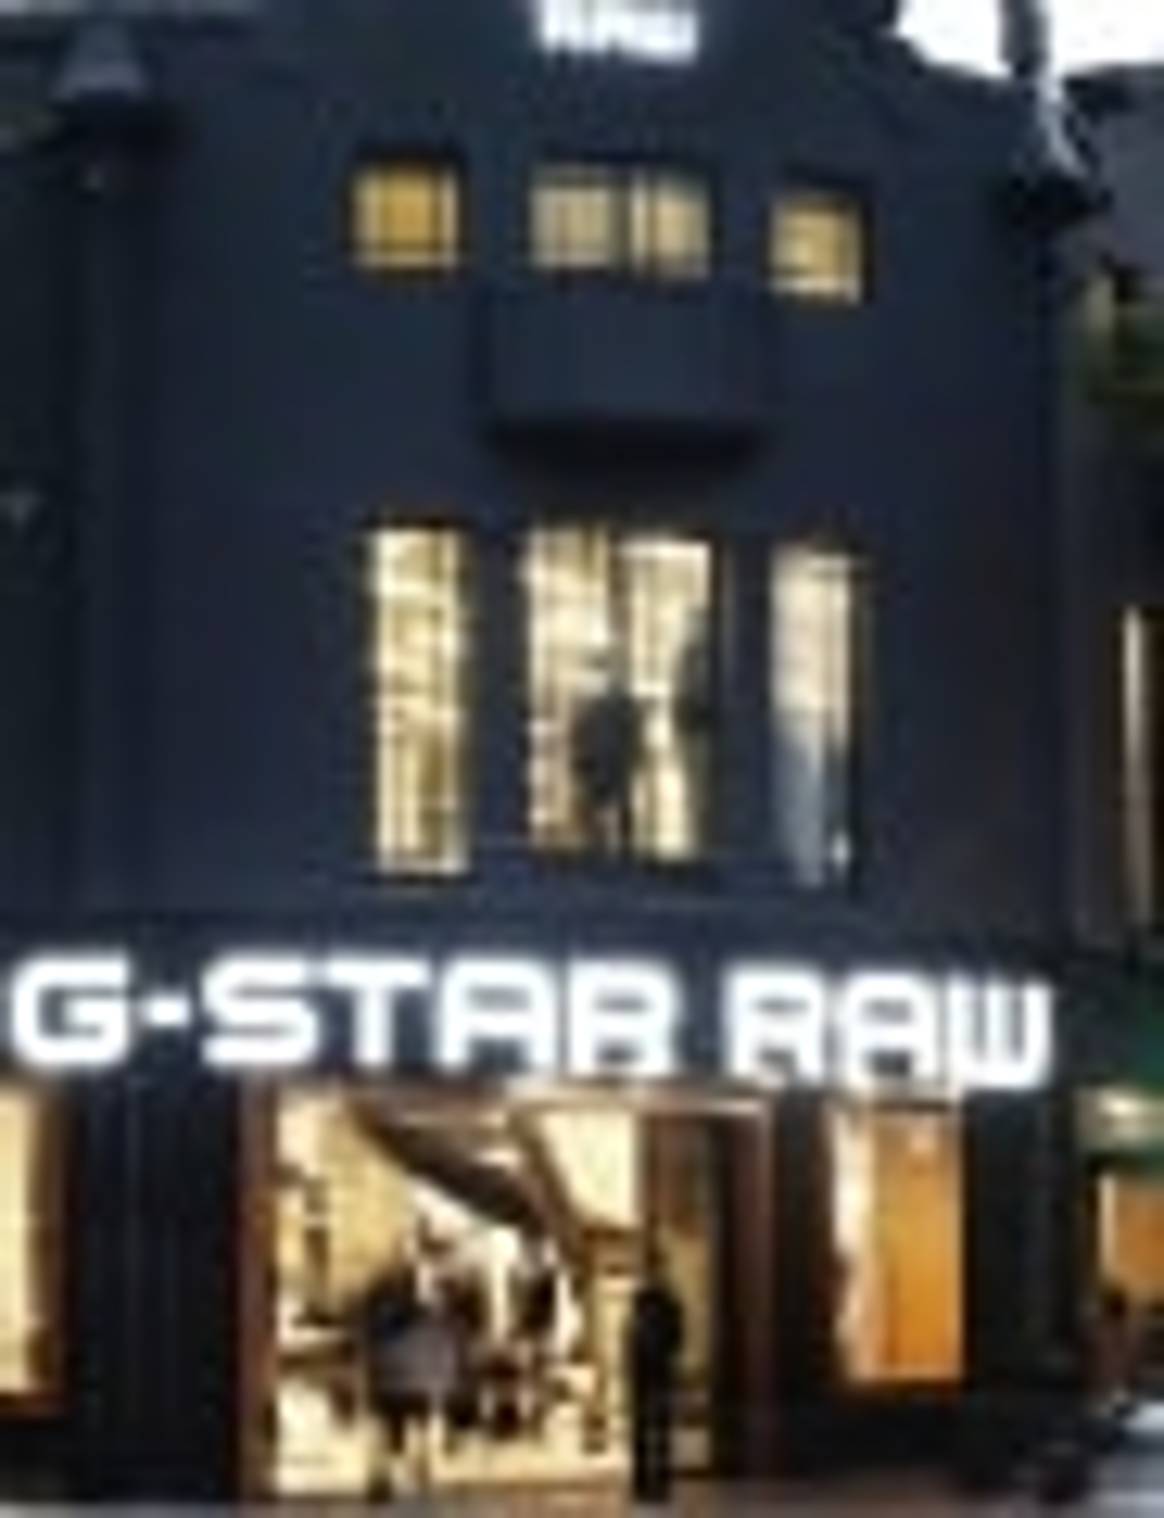 G-Star eröffnet Flagshipstore in Schanghai